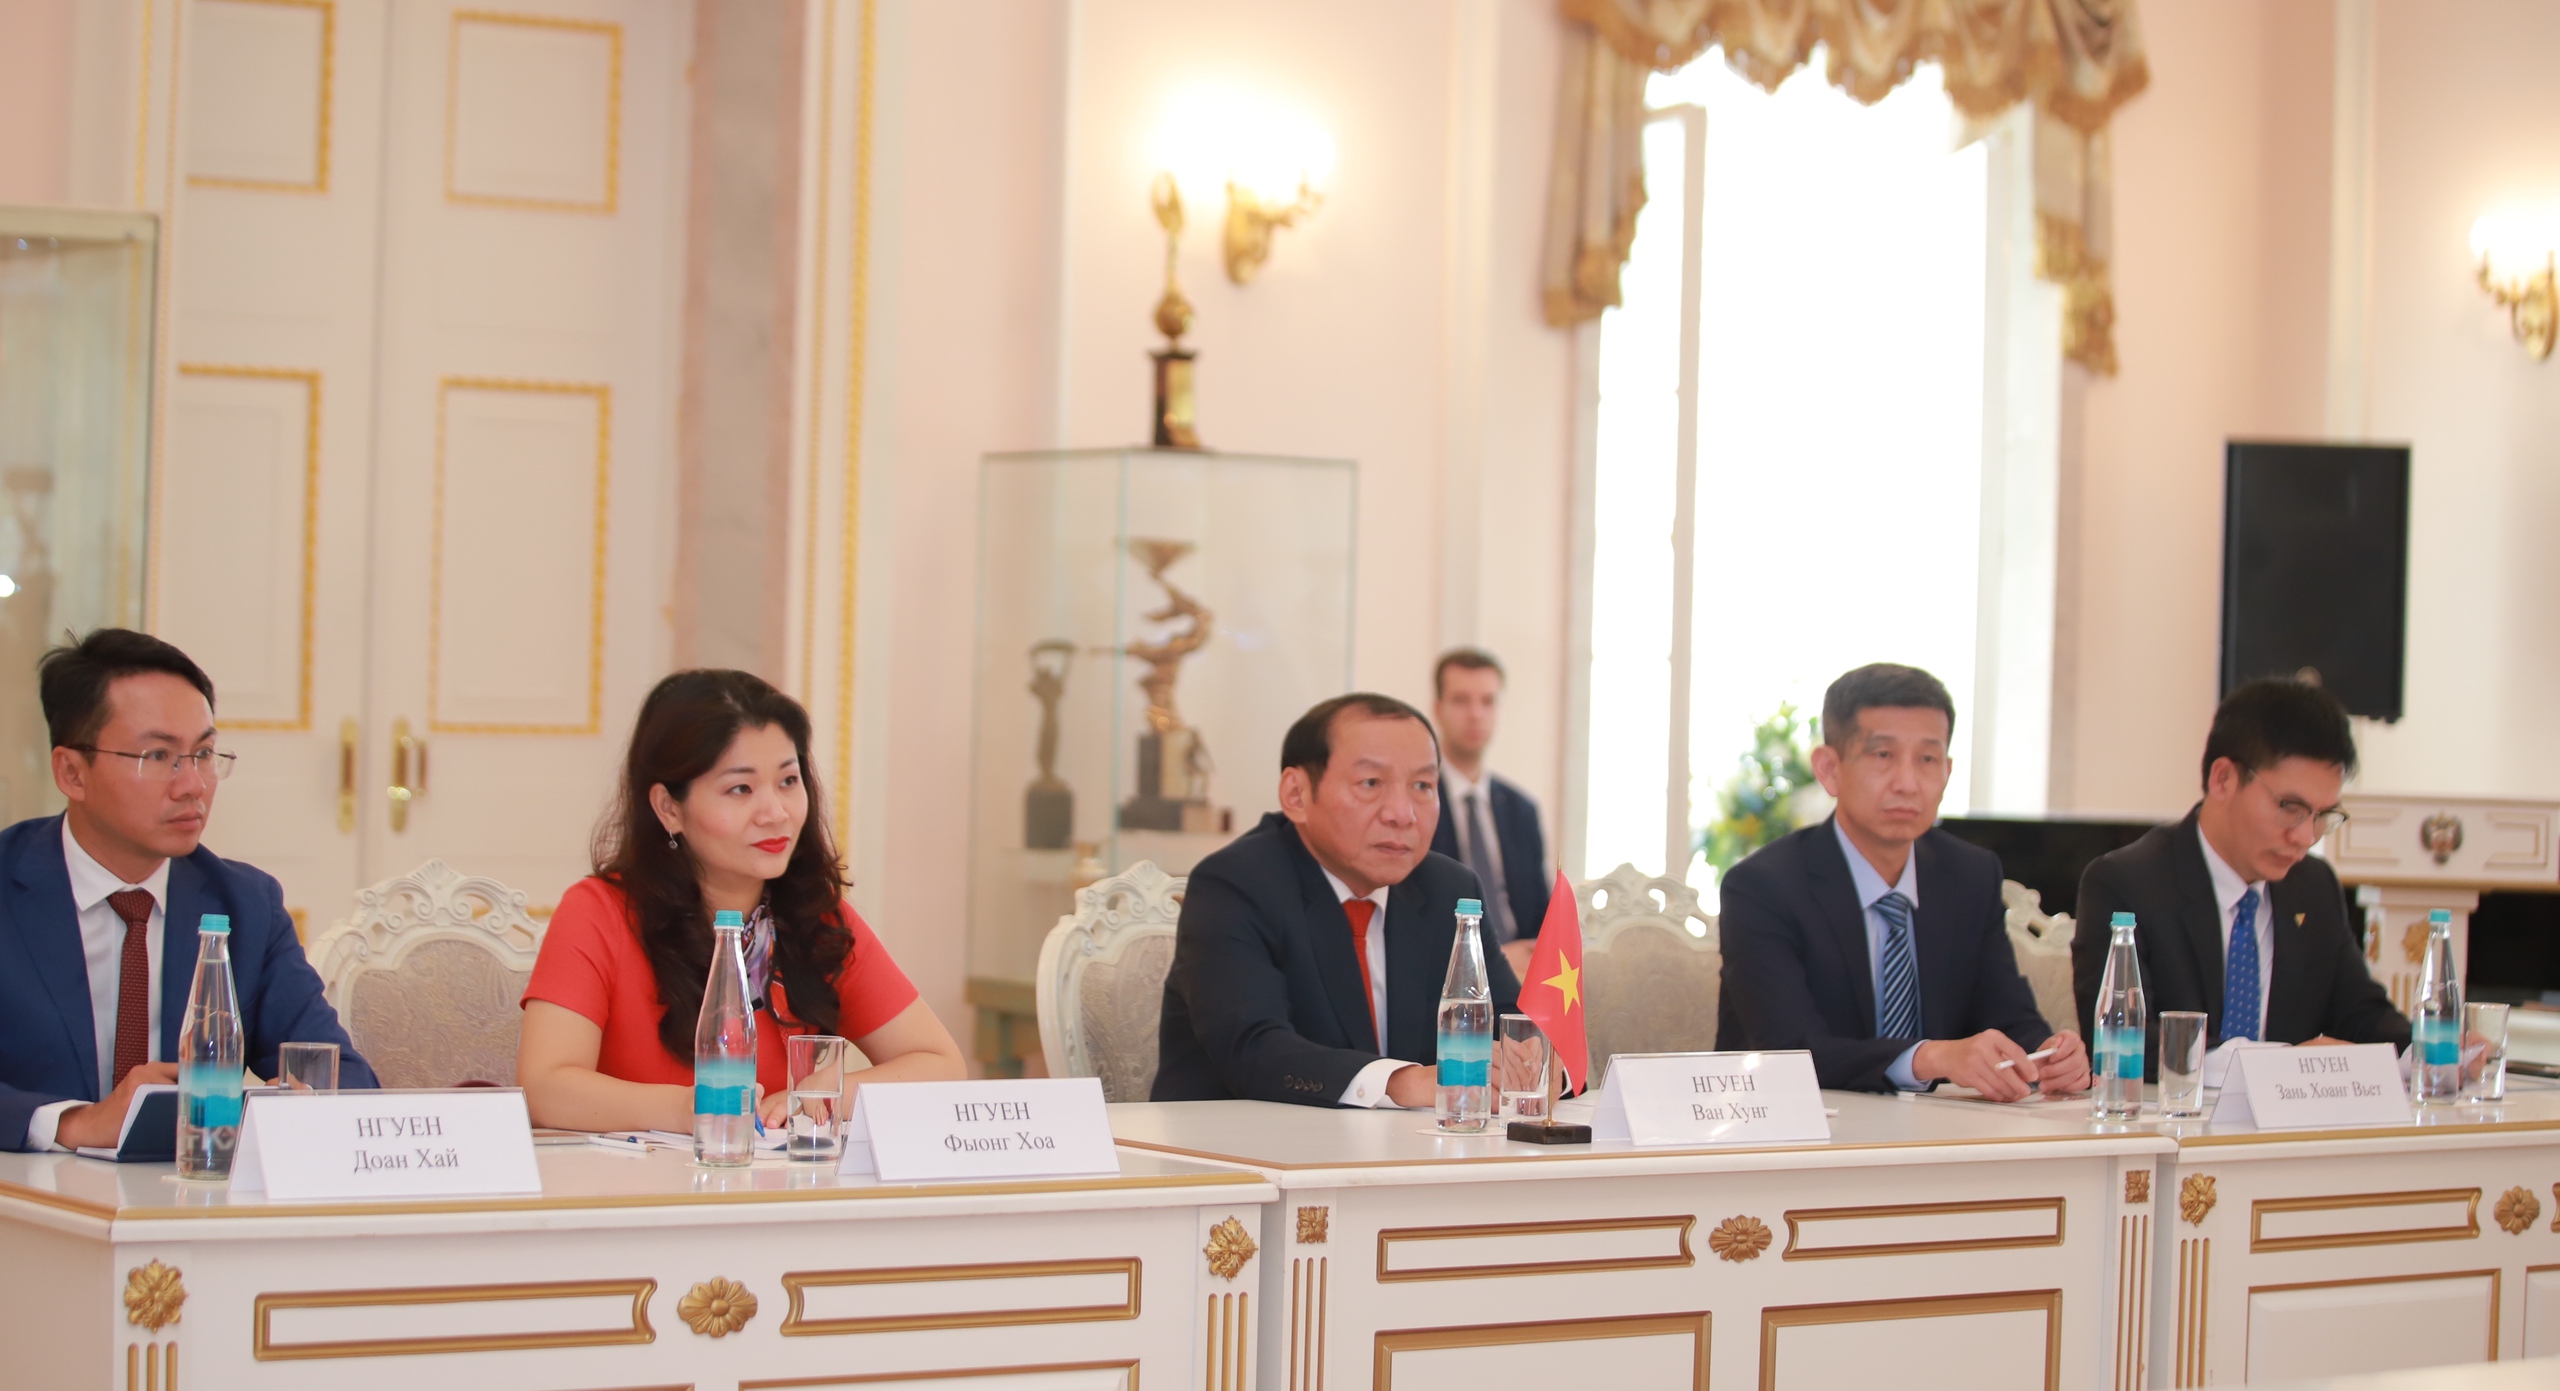 Bộ trưởng Nguyễn Văn Hùng: Đẩy mạnh hợp tác thể thao Việt Nam - Nga theo hướng có trọng tâm, trọng điểm, cùng phát triển - Ảnh 3.